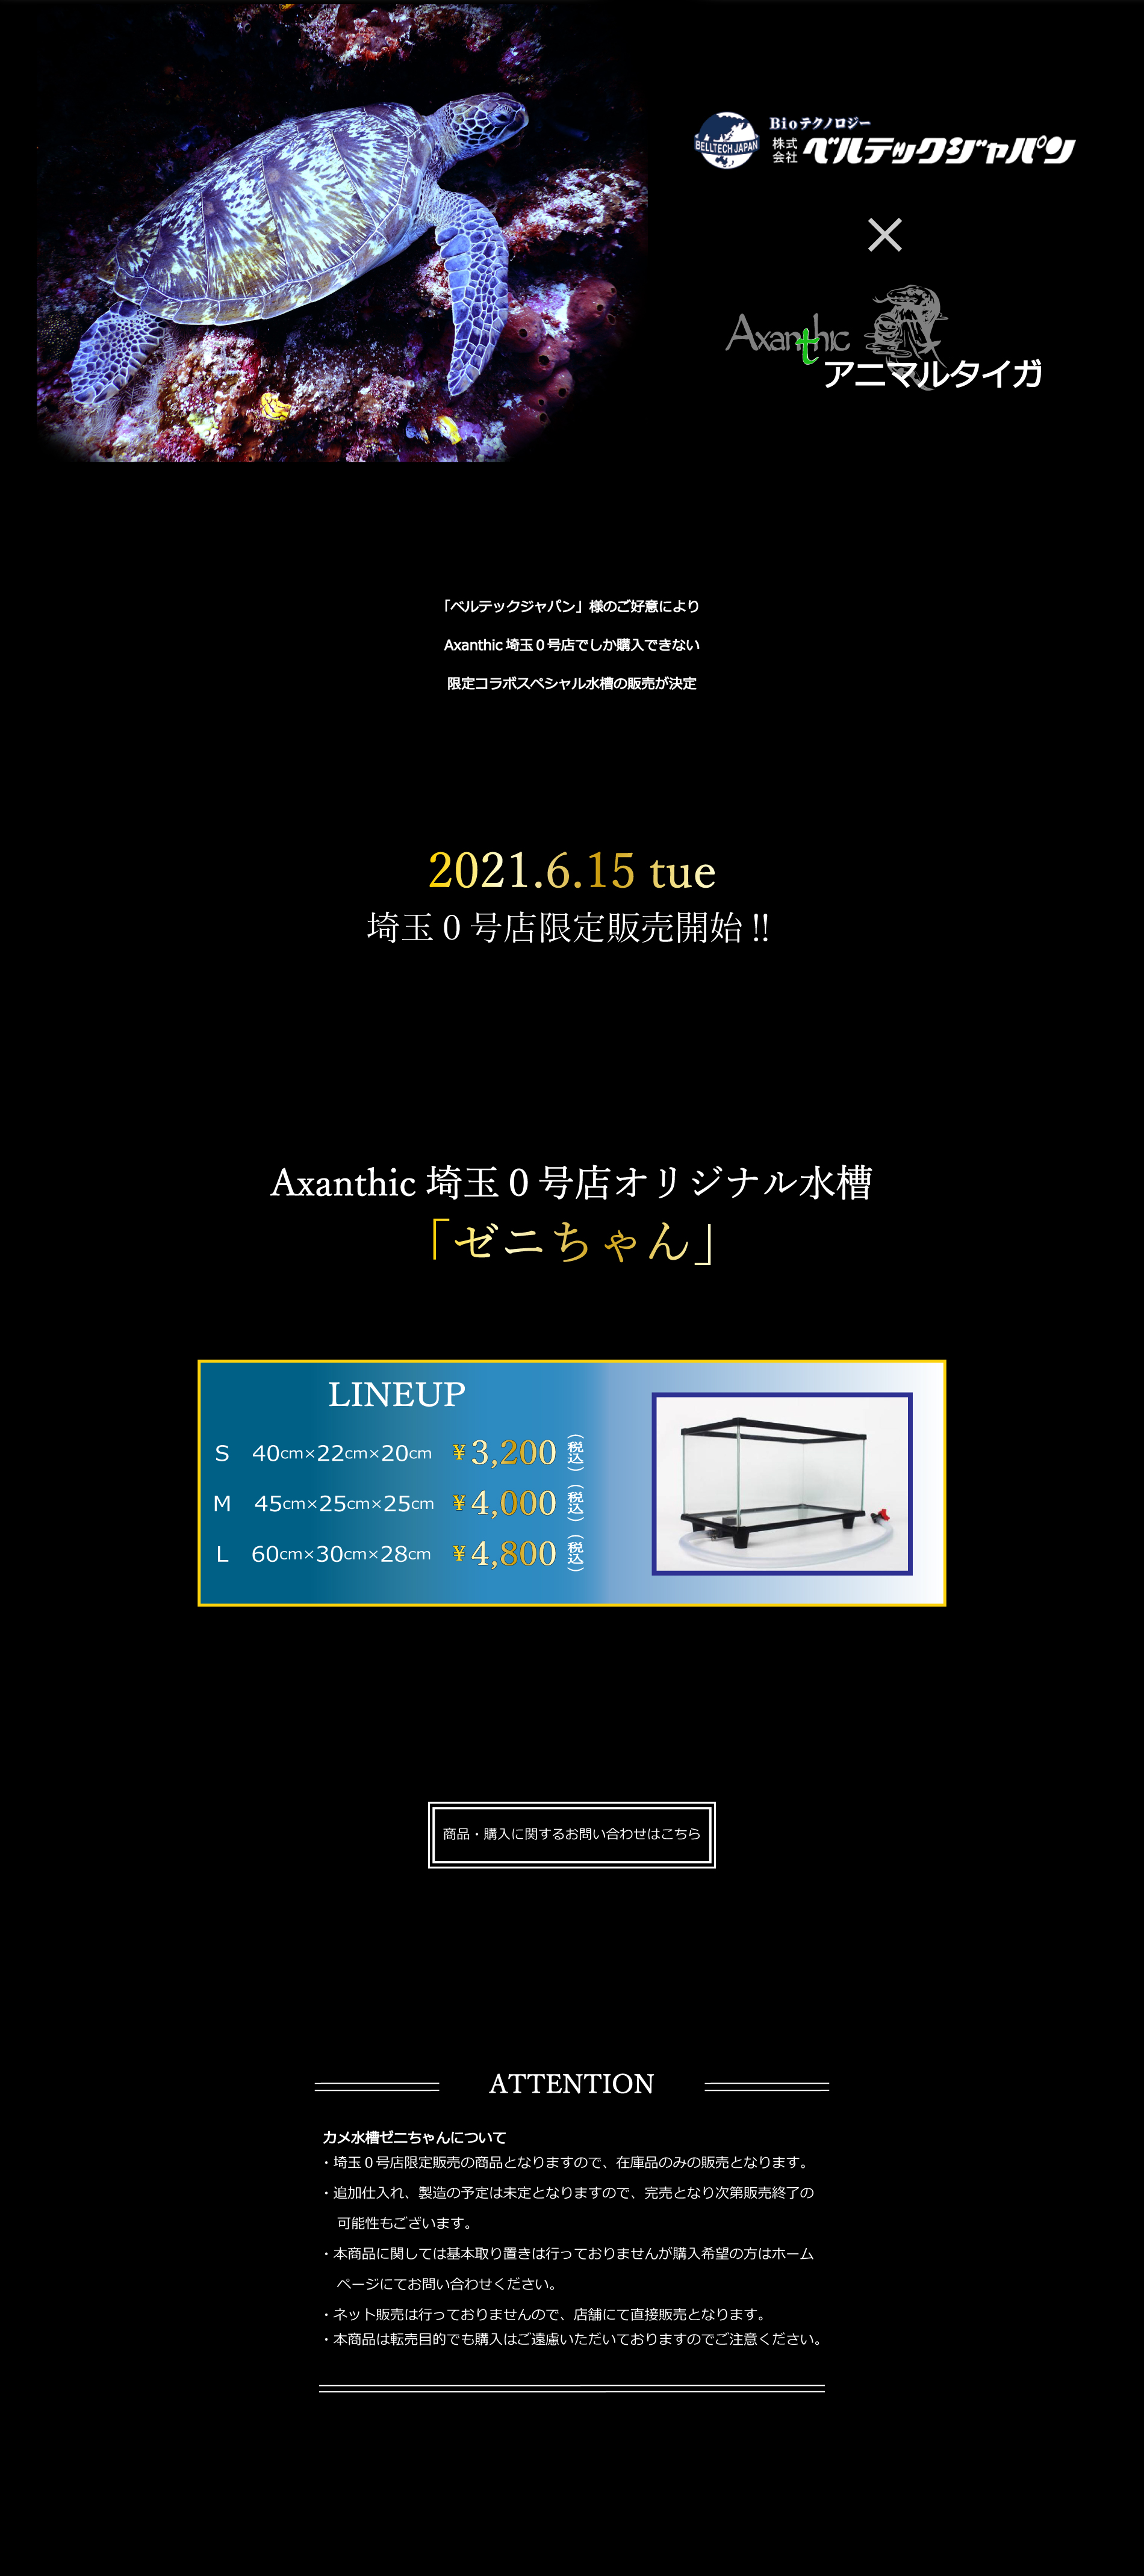 アニマルタイガ × ベルテックジャパン オープン記念コラボ水槽販売決定